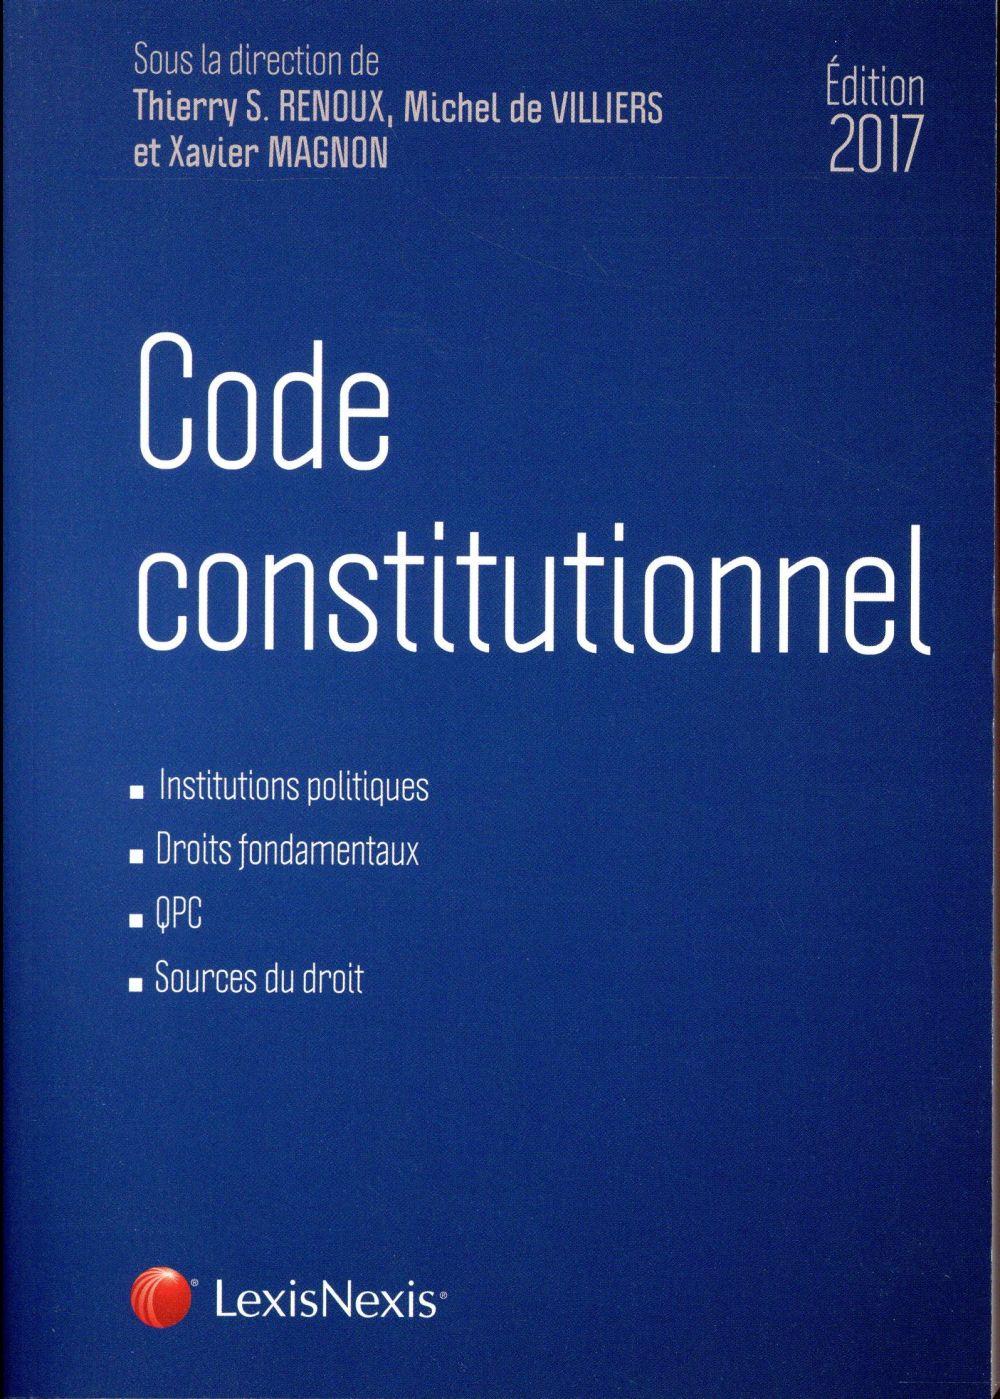 Code constitutionnel (édition 2017)